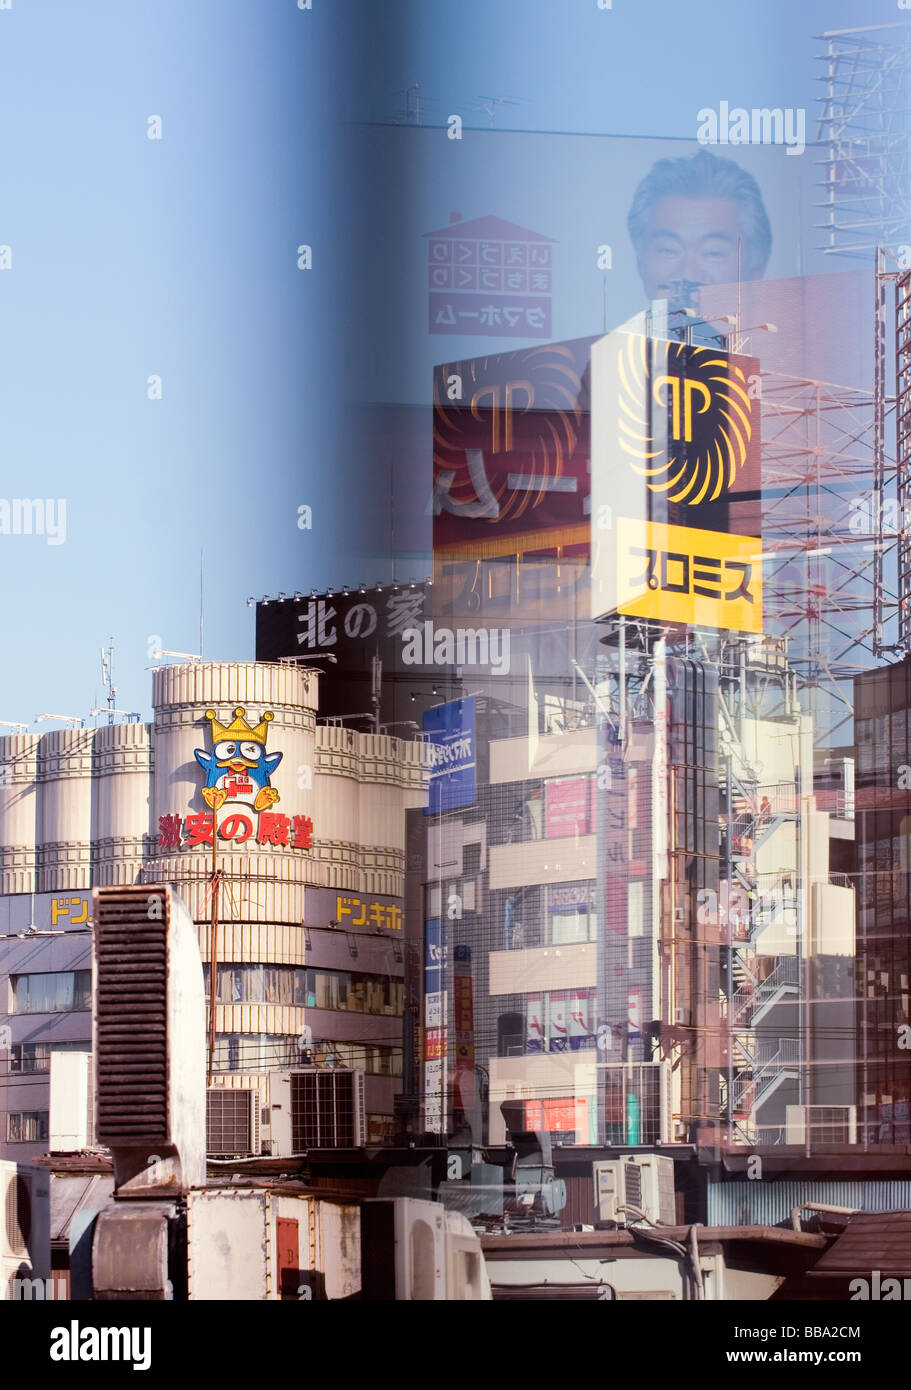 Städtische Komposition von Gebäuden und großen Werbetafeln, Tokio, Japan. Stockfoto